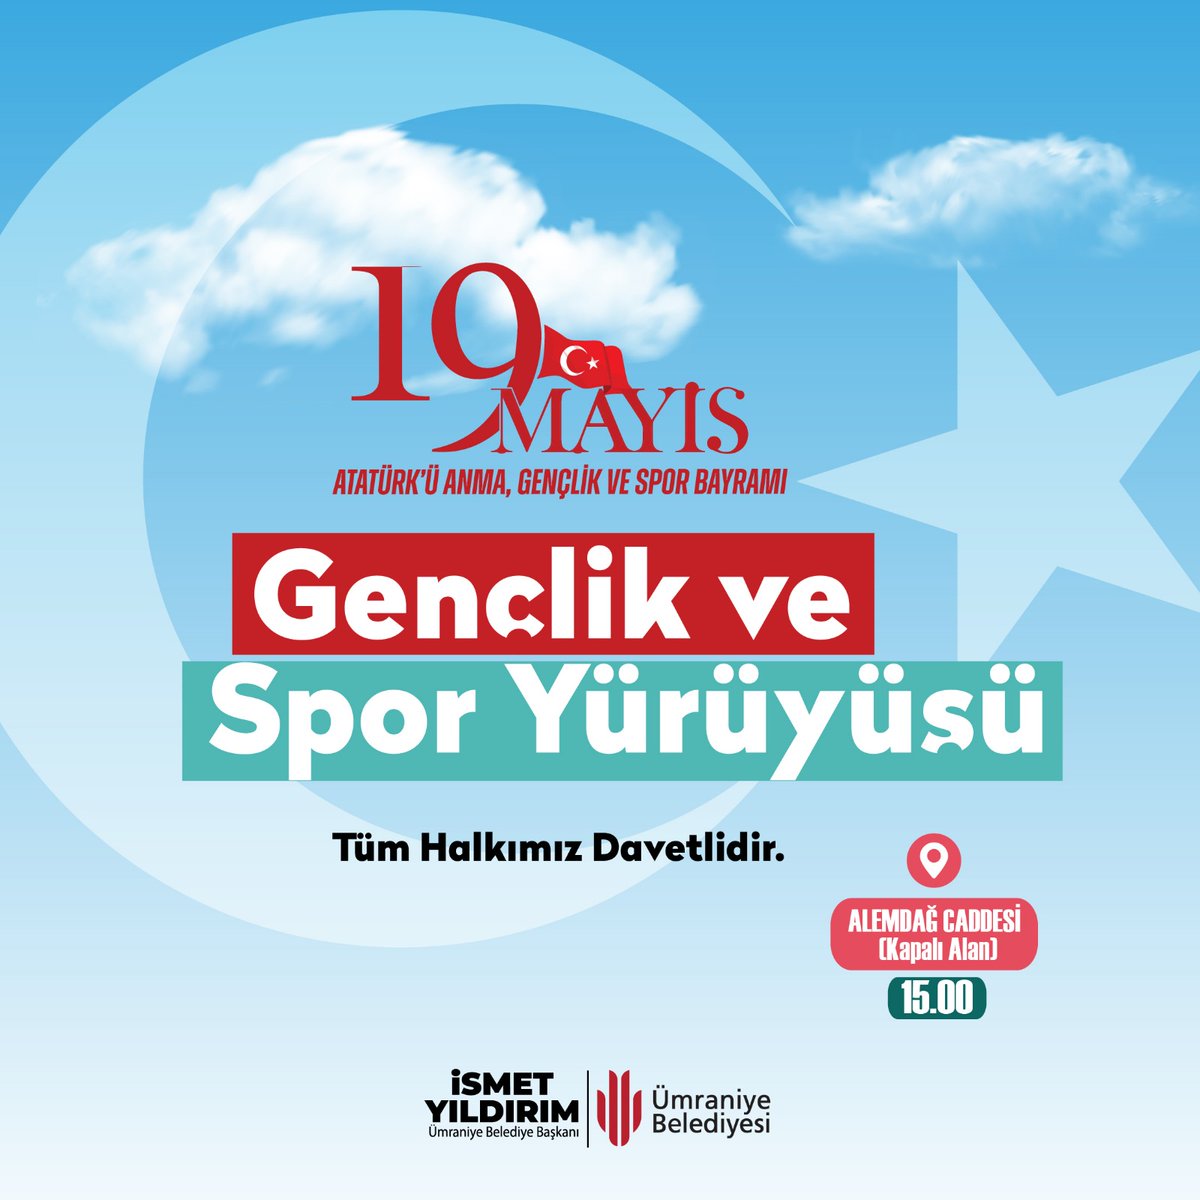 Kıymetli genç kardeşlerim ; Yarın, #19Mayıs Atatürk'ü Anma, Gençlik ve Spor Bayramı... 🇹🇷 Gazi Mustafa Kemal Atatürk'ün, geleceğimizin teminatı siz değerli gençlerimize armağan ettiği bu kutlu günde, ay yıldızlı bayrağımızla birlikte Alemdağ Caddesi'nde gerçekleştireceğimiz